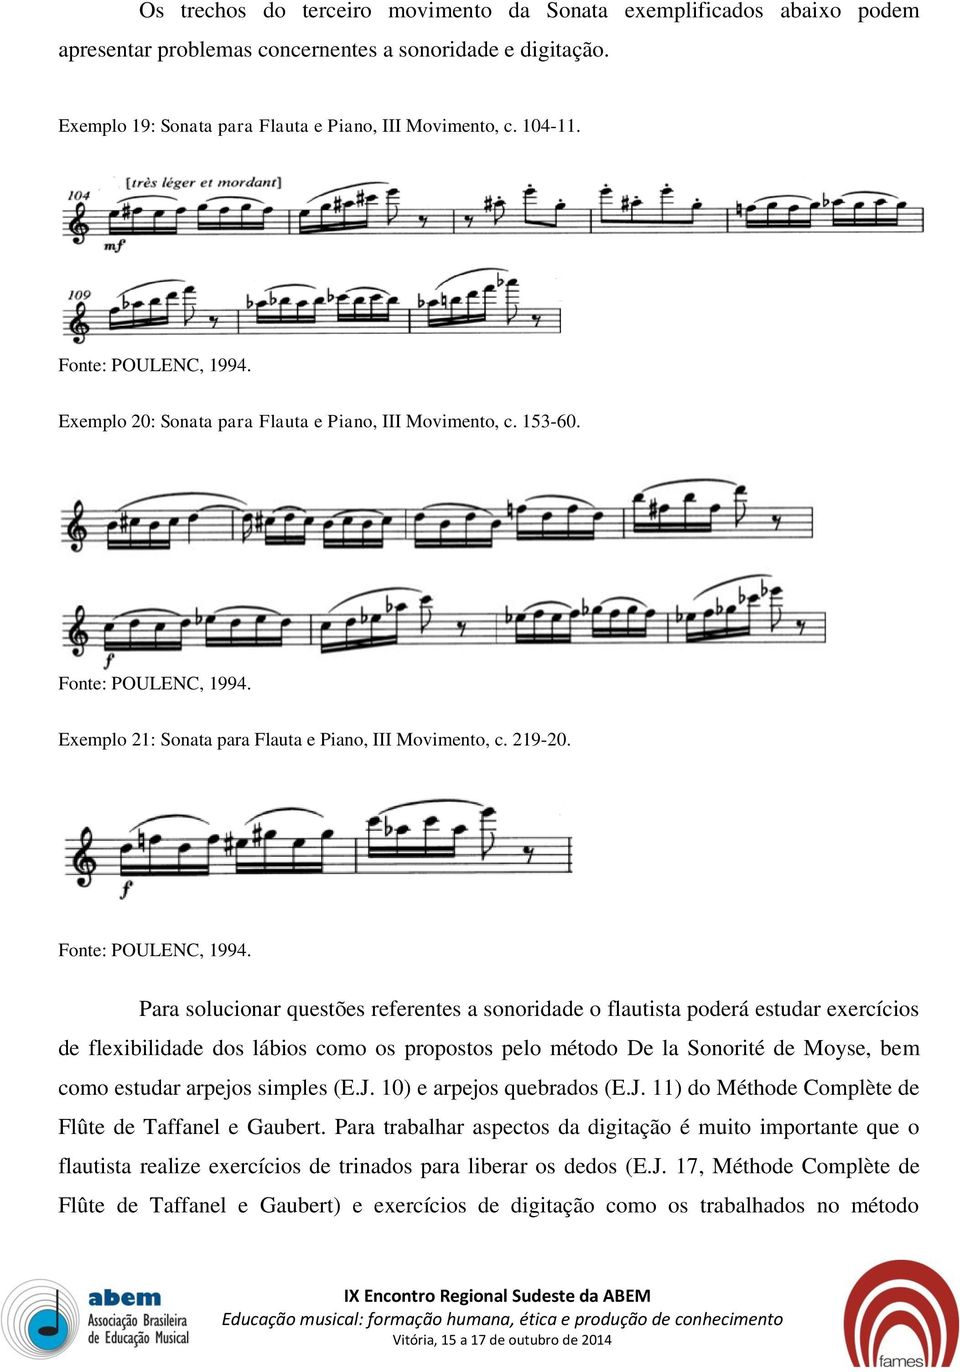 Para solucionar questões referentes a sonoridade o flautista poderá estudar exercícios de flexibilidade dos lábios como os propostos pelo método De la Sonorité de Moyse, bem como estudar arpejos